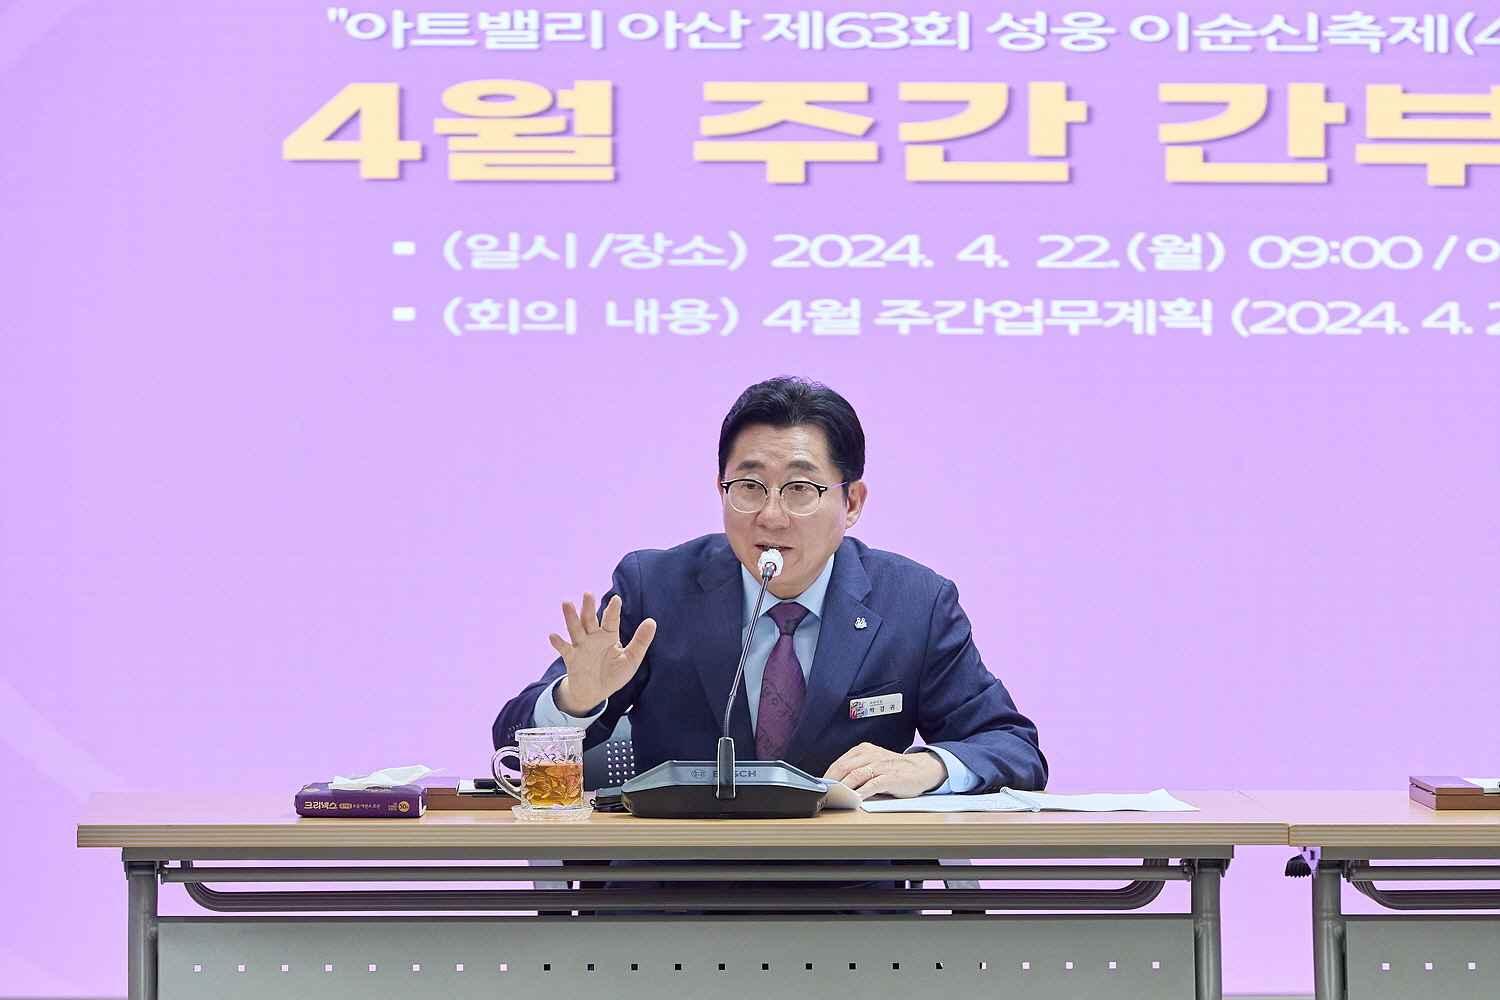 박경귀 아산시장 “성웅 이순신 축제, ‘4無’ 목표로 준비에 만전” 지시 